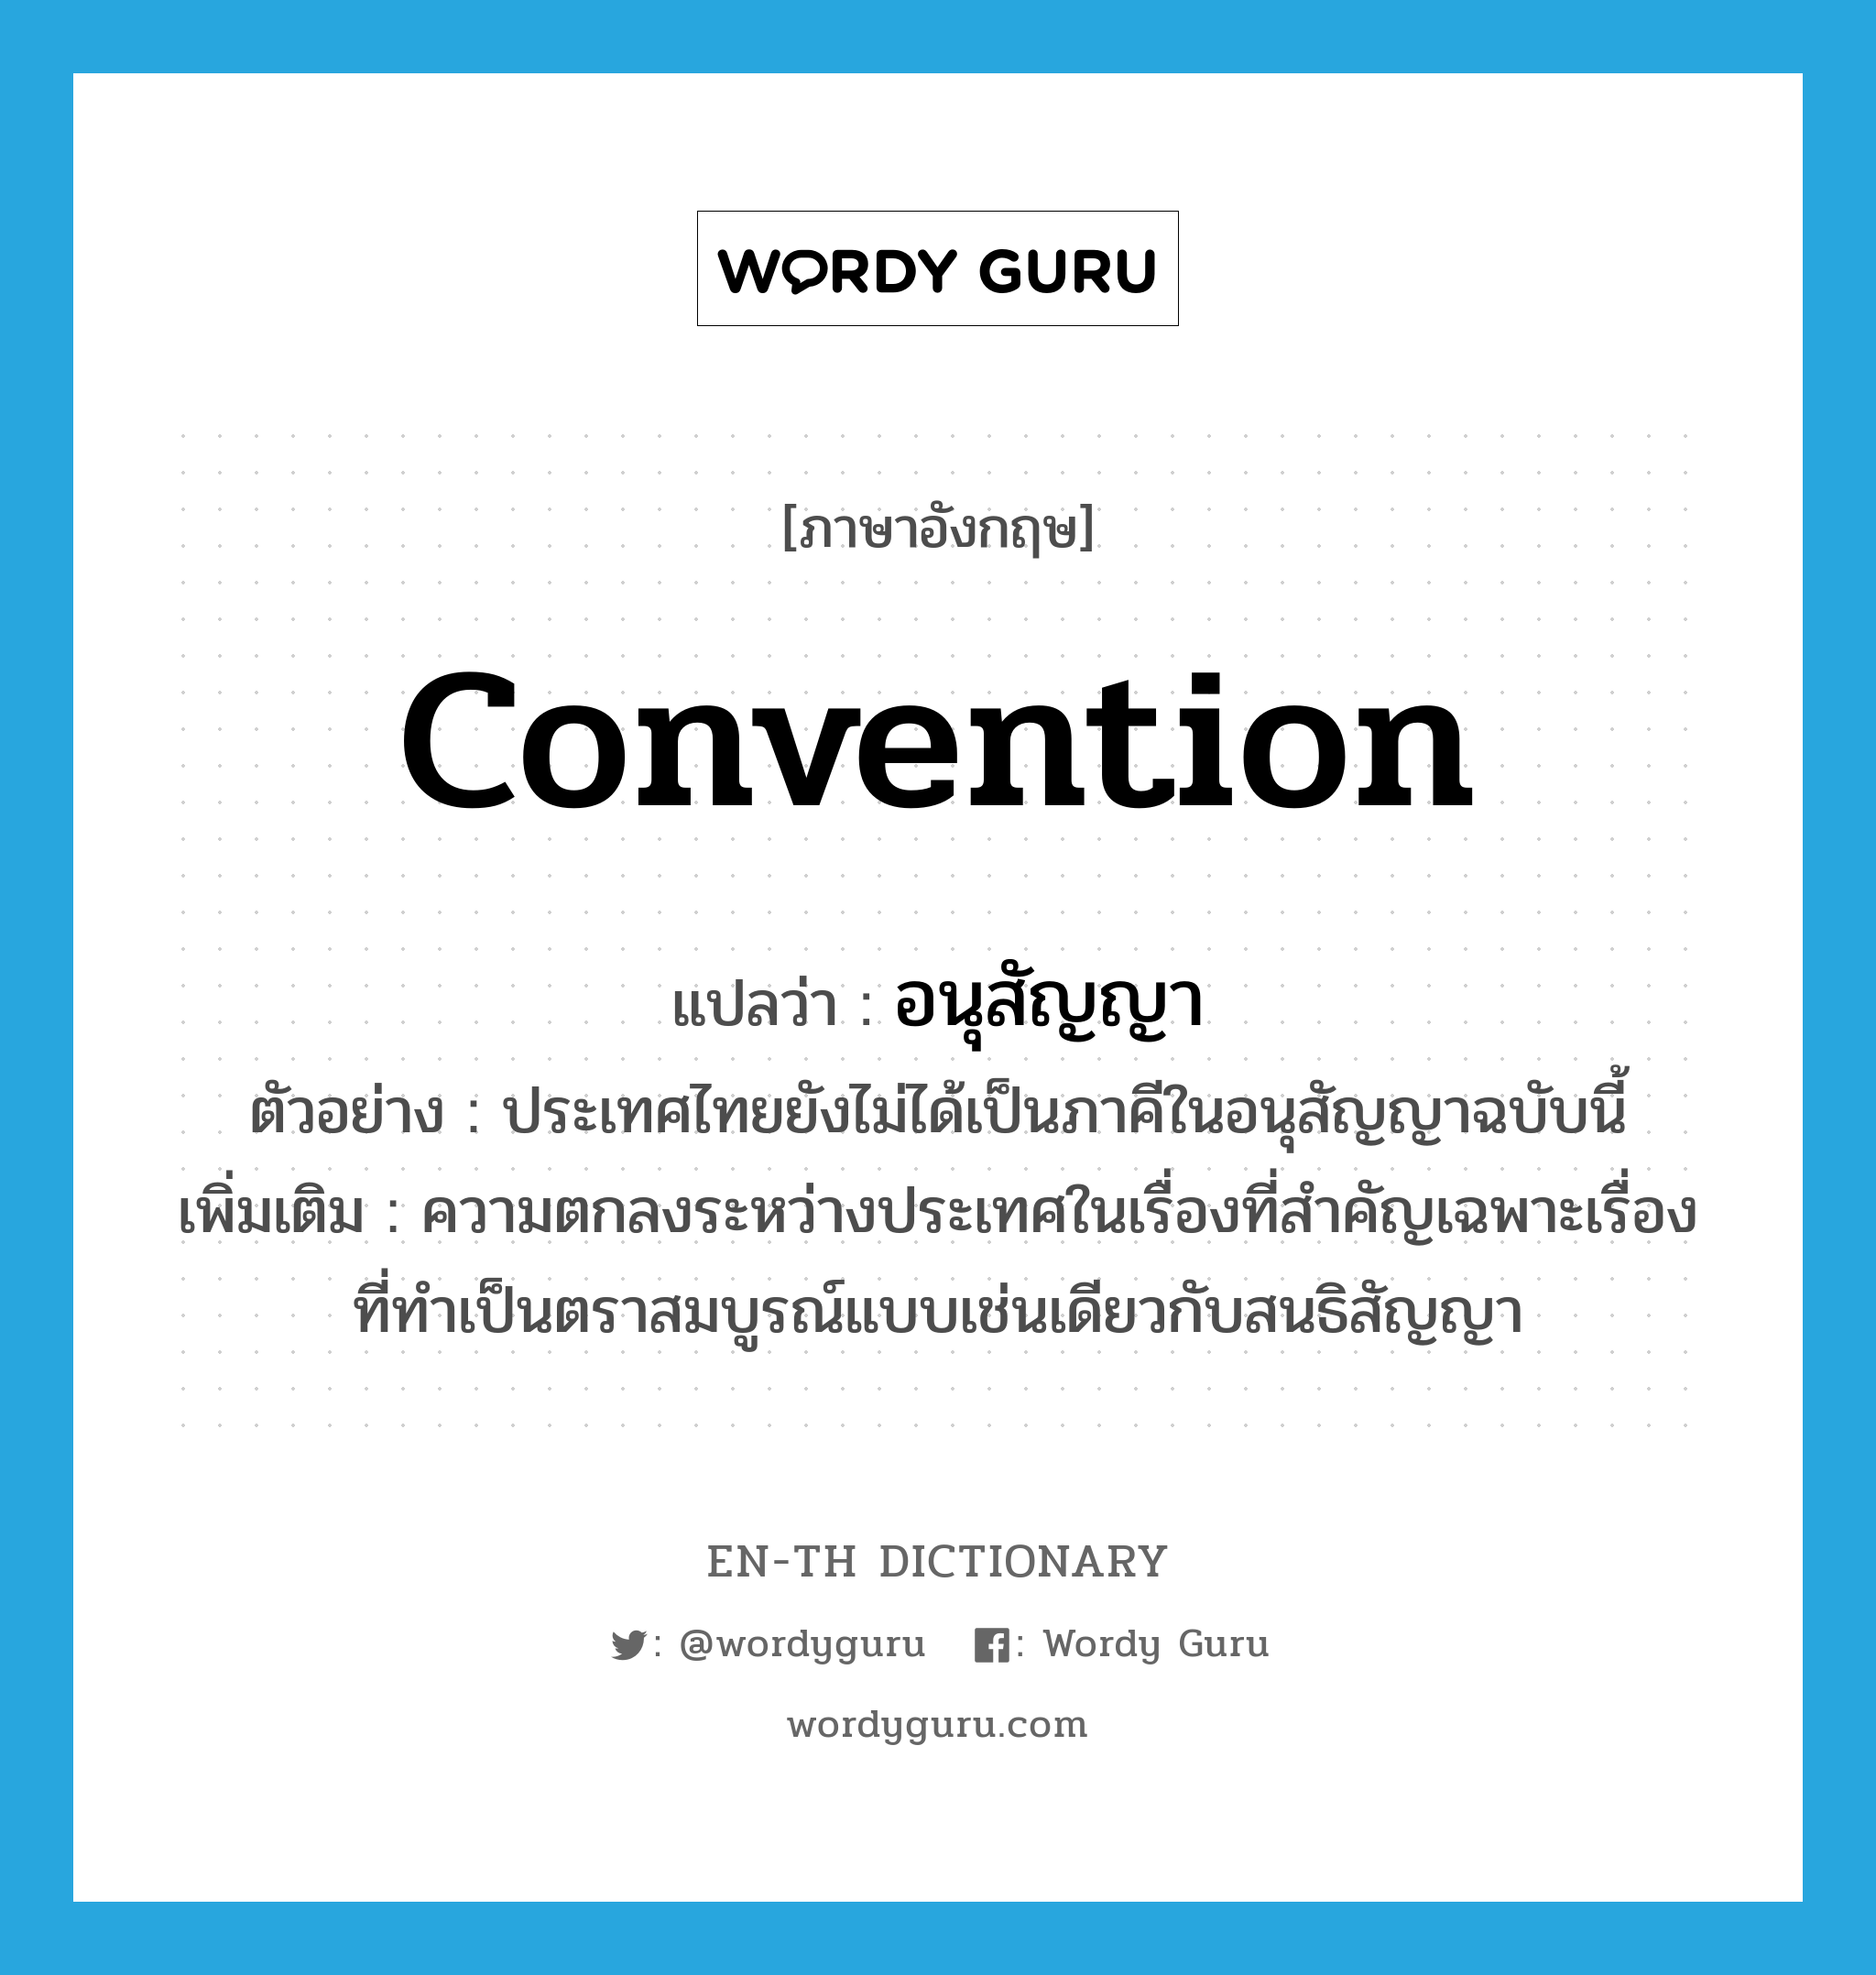 convention แปลว่า?, คำศัพท์ภาษาอังกฤษ convention แปลว่า อนุสัญญา ประเภท N ตัวอย่าง ประเทศไทยยังไม่ได้เป็นภาคีในอนุสัญญาฉบับนี้ เพิ่มเติม ความตกลงระหว่างประเทศในเรื่องที่สำคัญเฉพาะเรื่องที่ทำเป็นตราสมบูรณ์แบบเช่นเดียวกับสนธิสัญญา หมวด N